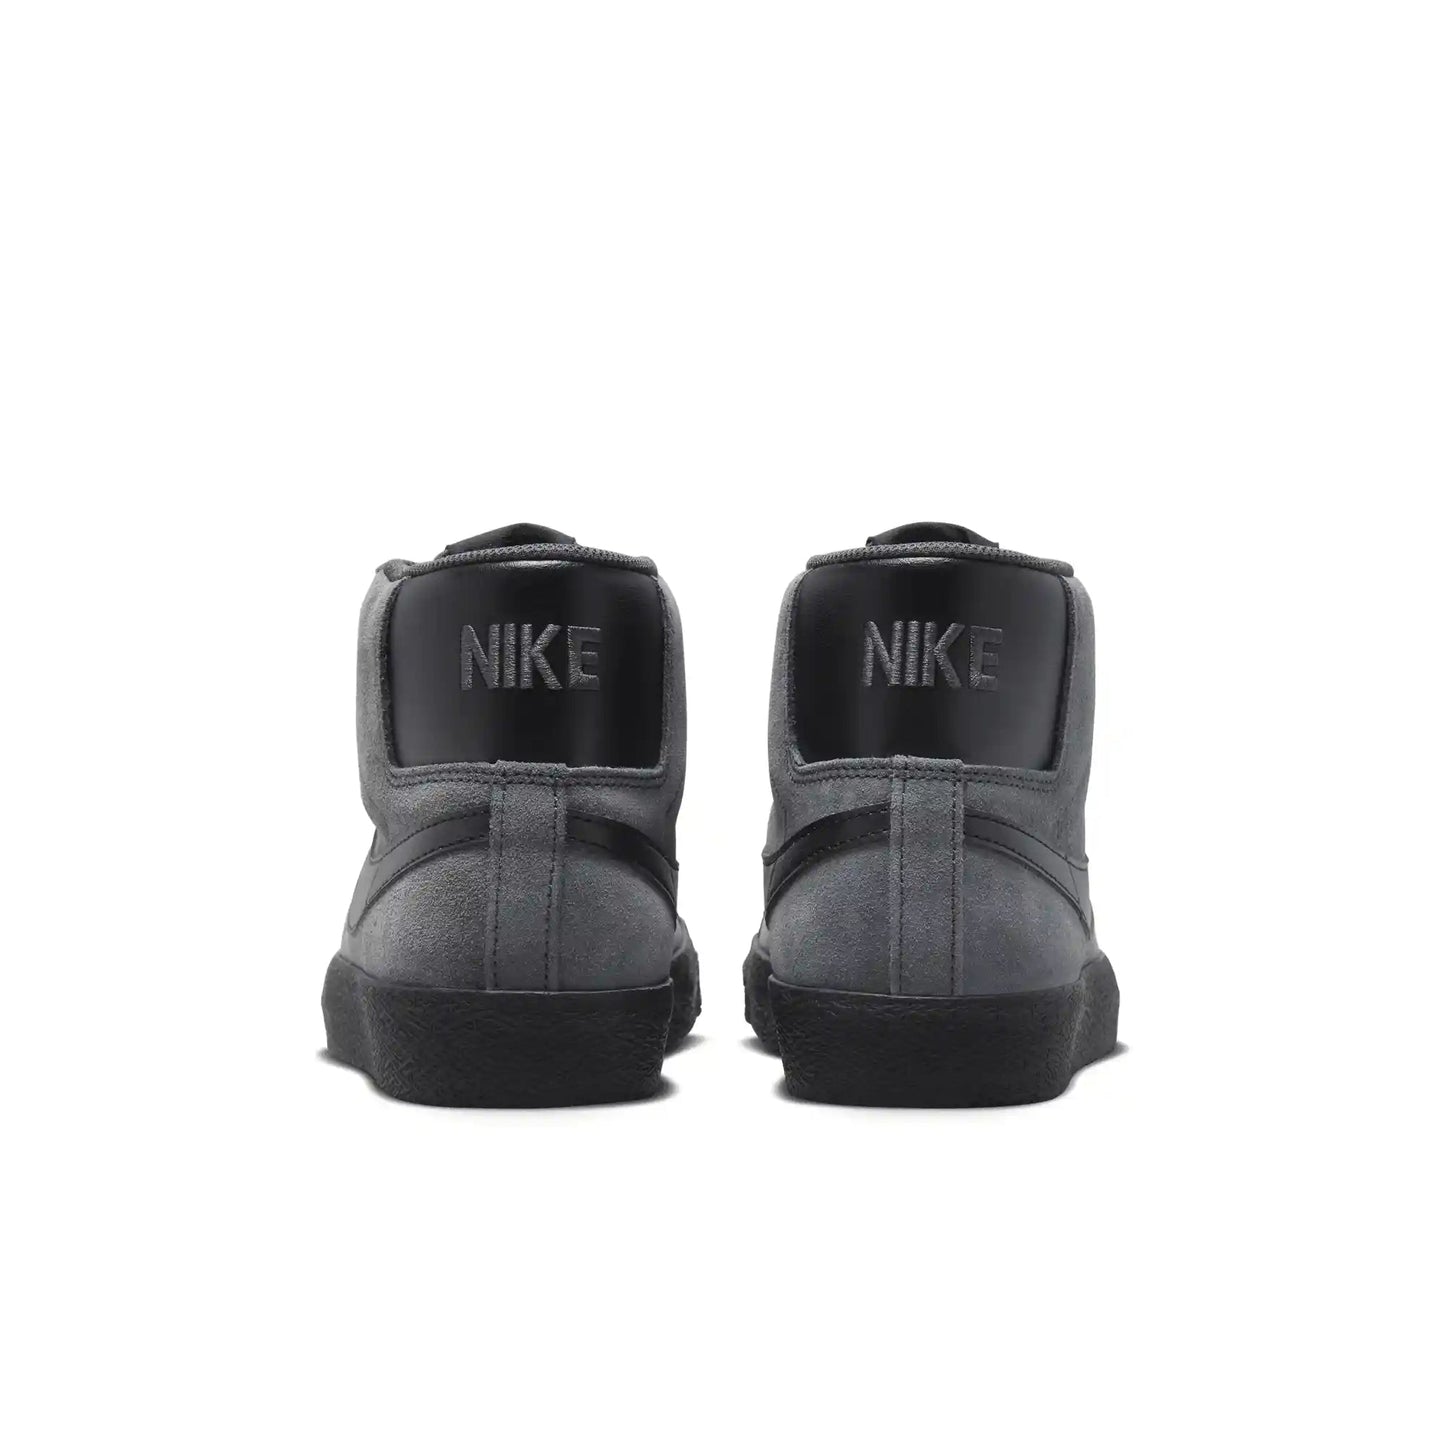 Nike SB Zoom Blazer Mid, anthracite/black-anthracite-black - Tiki Room Skateboards - 6